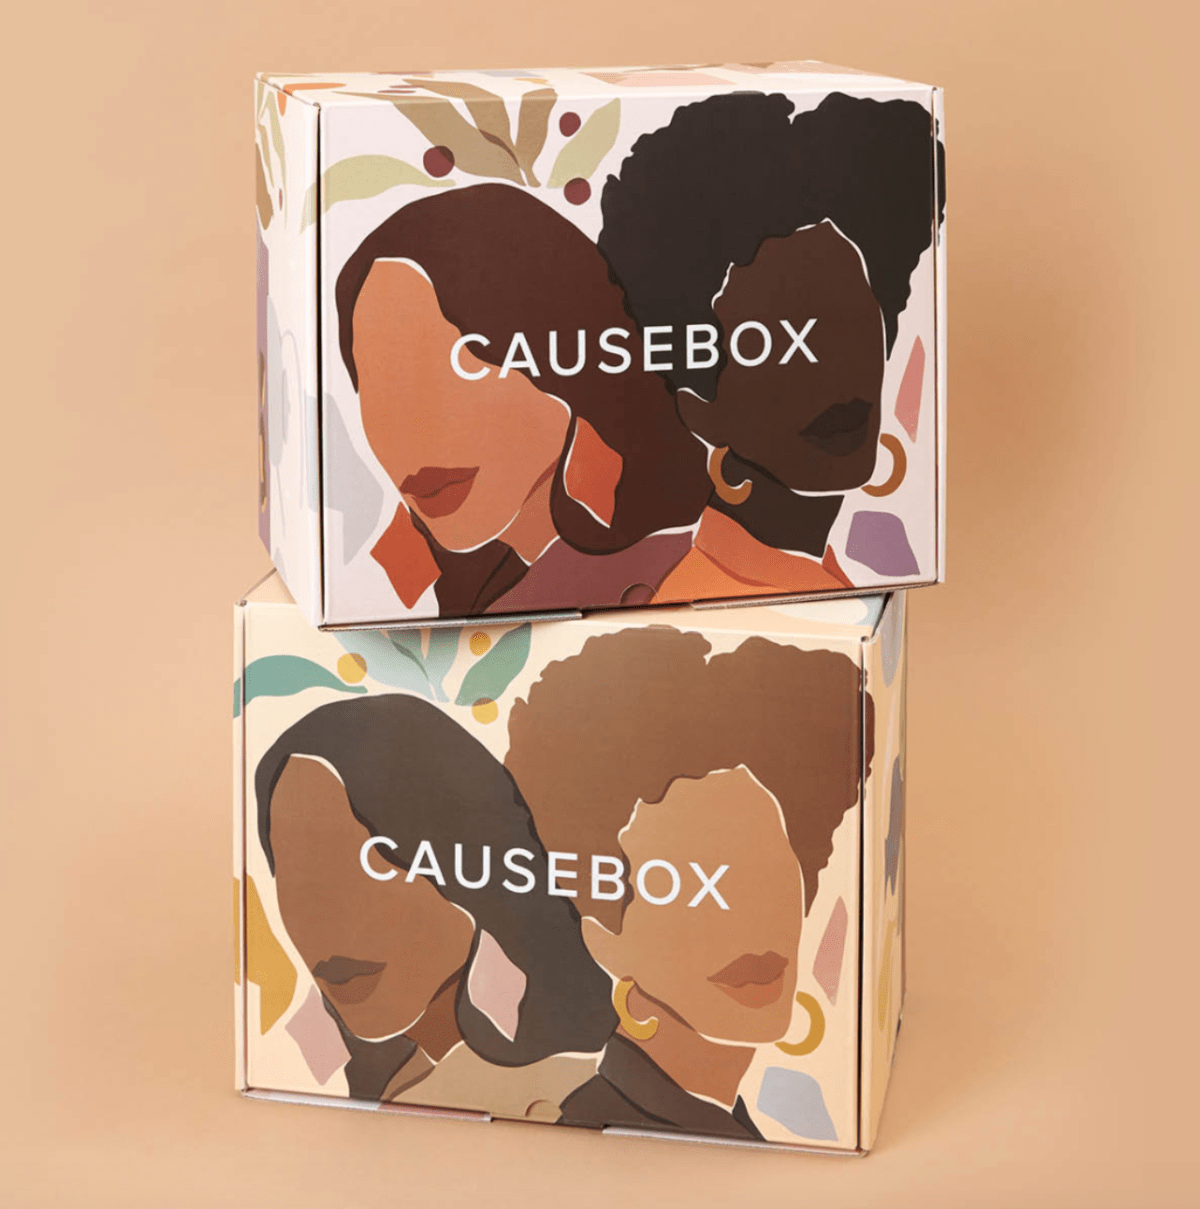 CAUSEBOX Winter 2020 Box FULL Spoilers + 20% Off Coupon Code